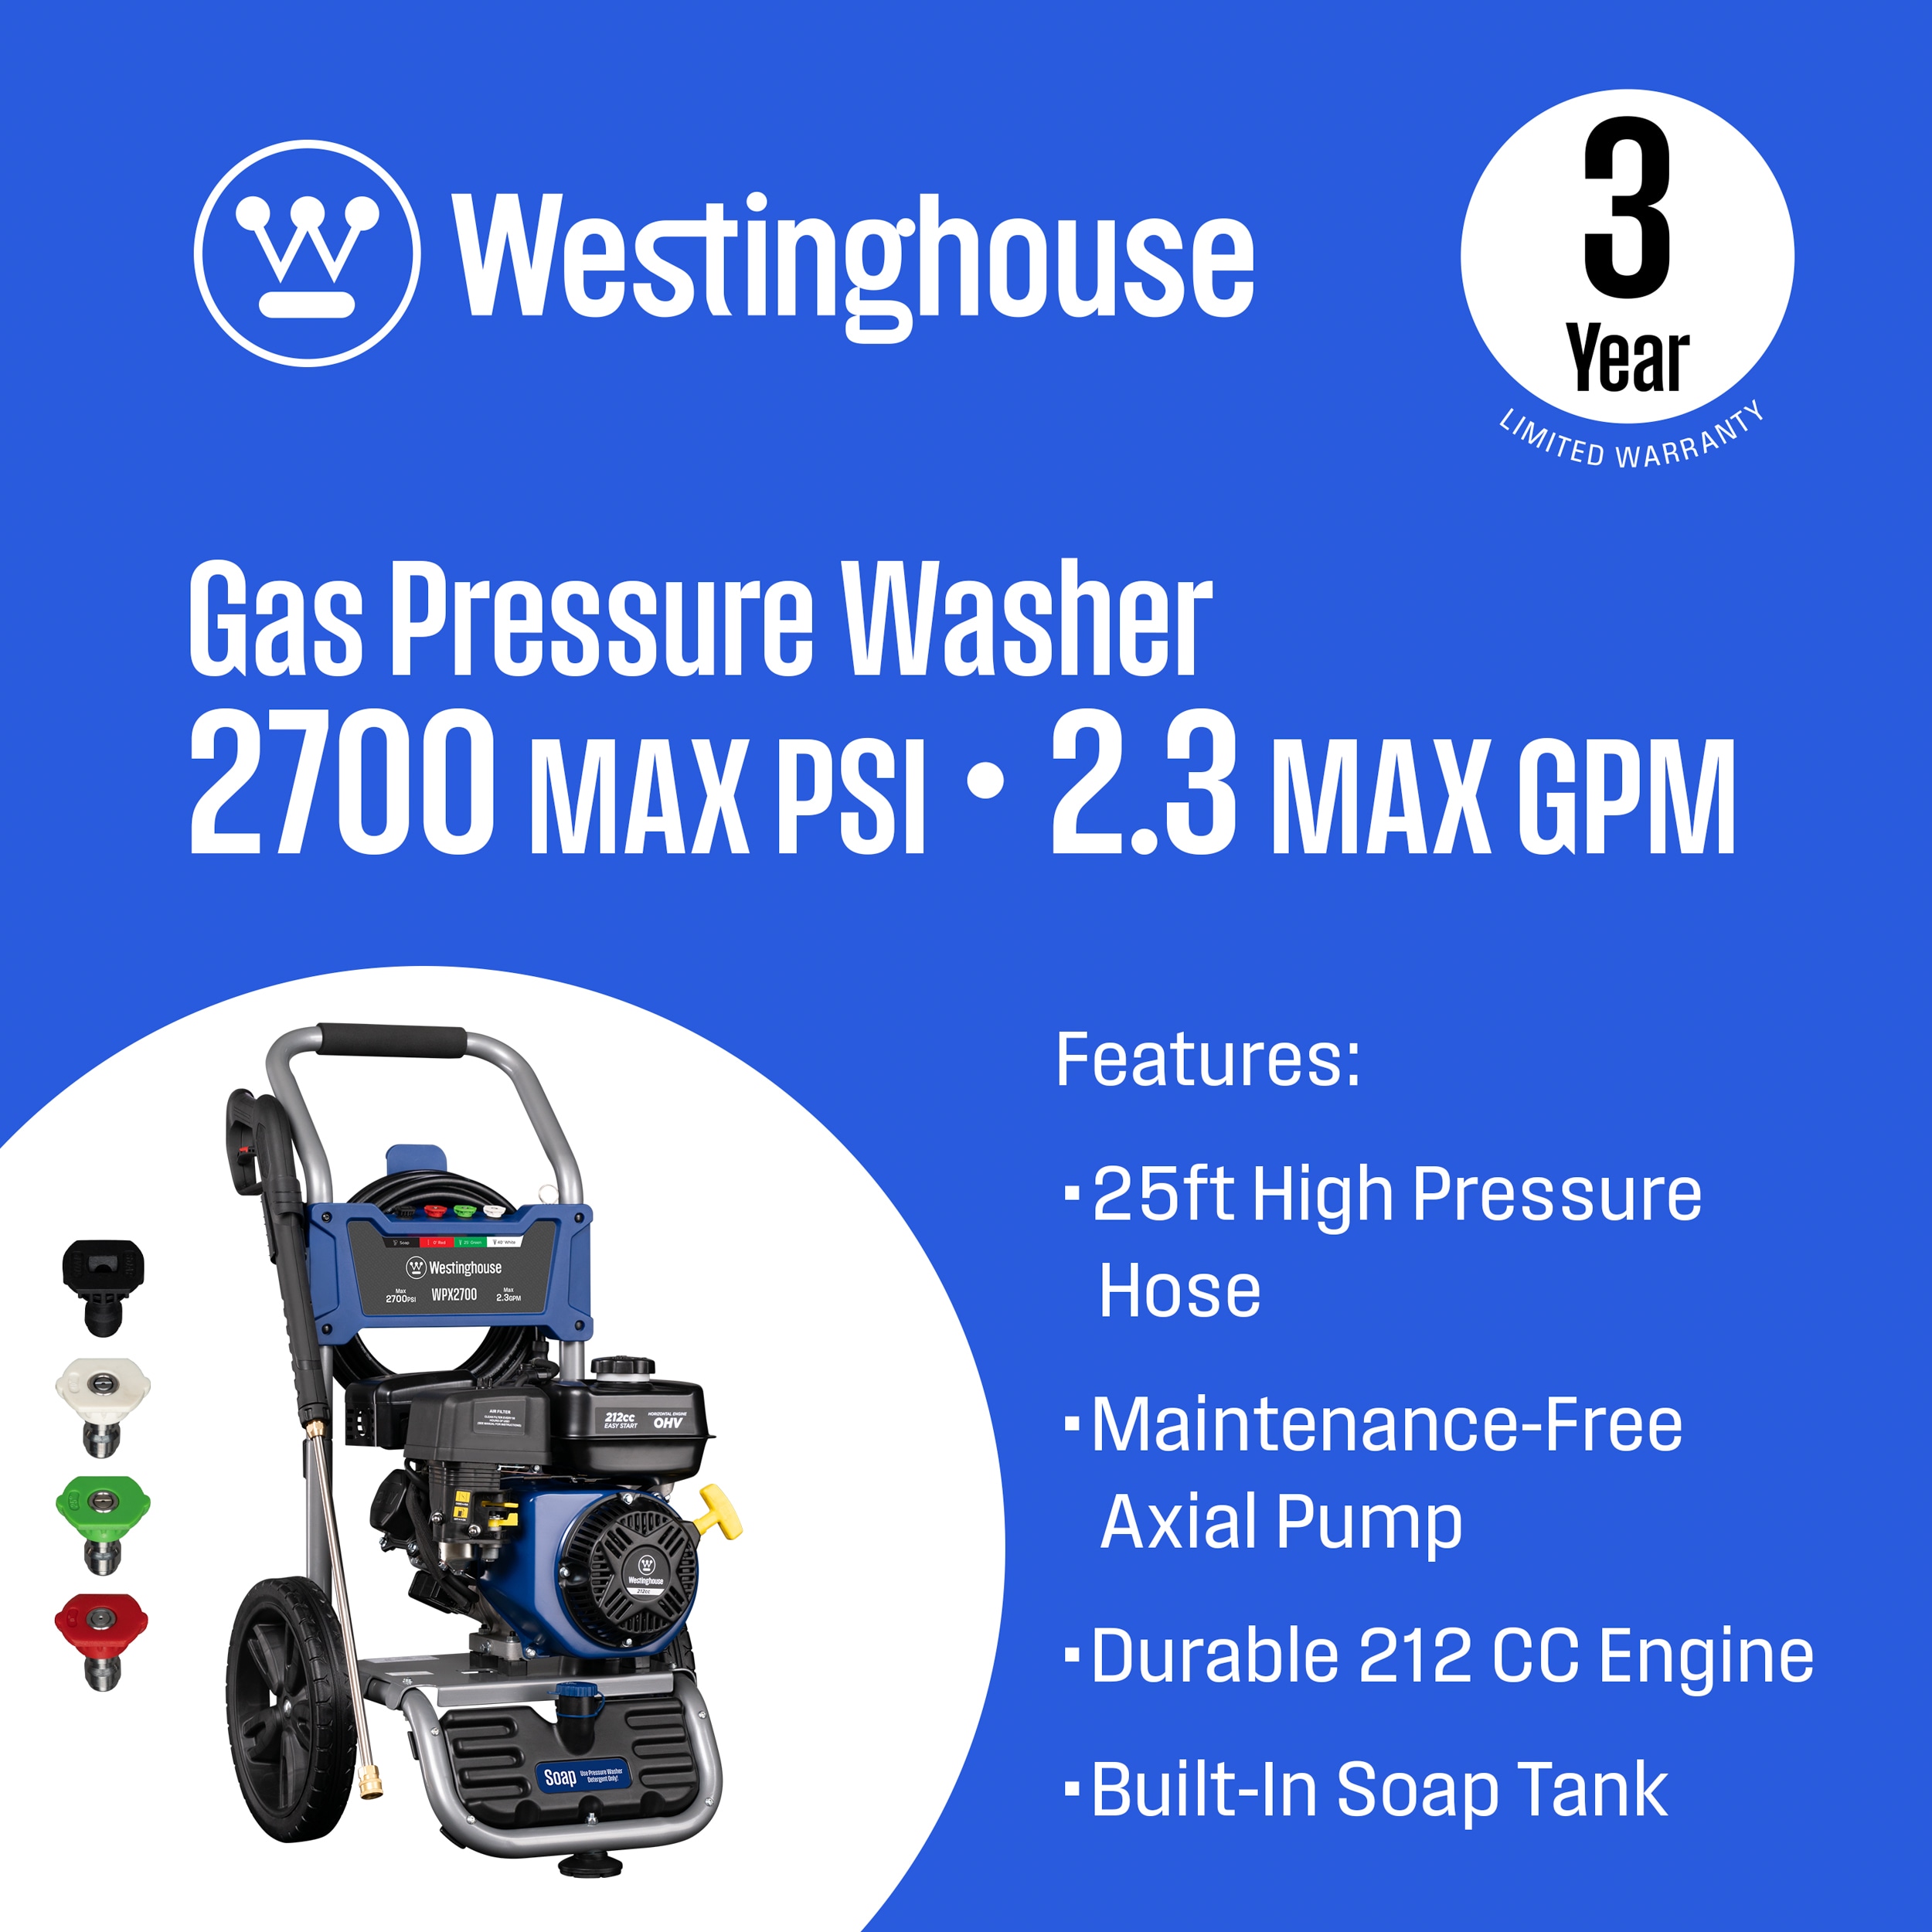 Pressure-Pro Pro ATV 2700 PSI @ 3.0 GPM Viper Pump Honda Engine Direct